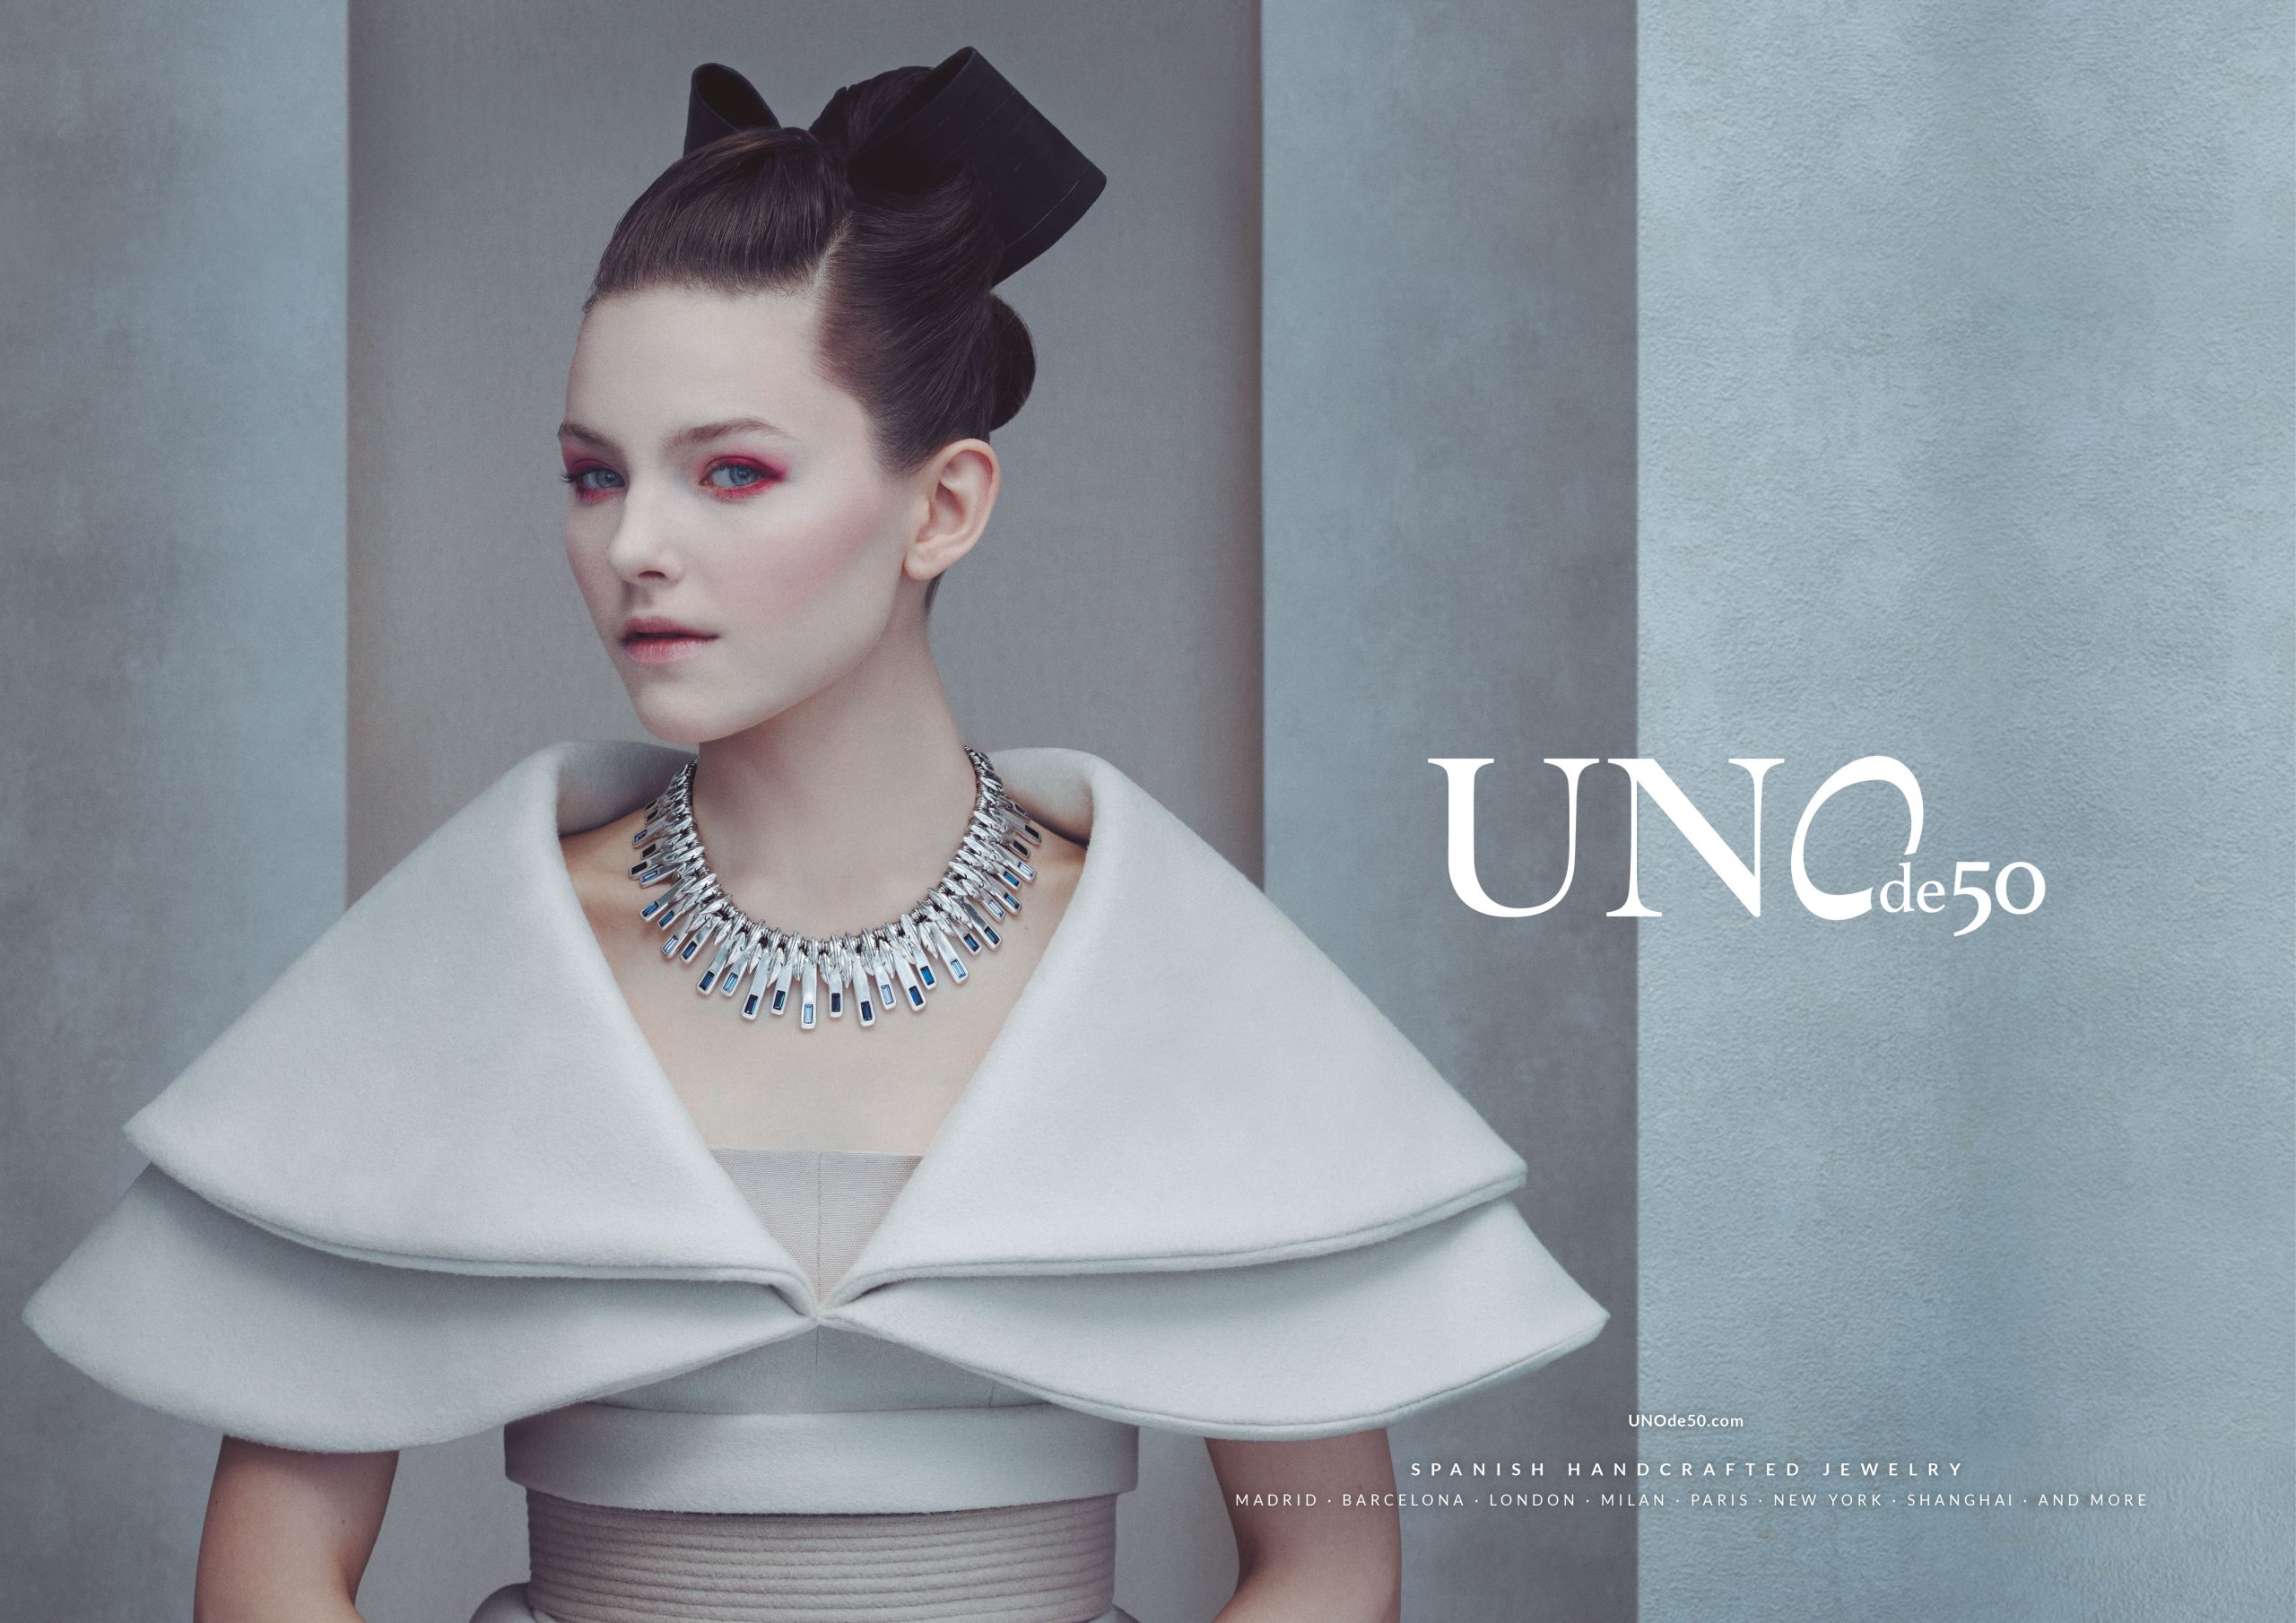 UNOde50 Asia - Campaña publicitaria realizada por Enri Mür Studio, con las fotografías de Richard Ramos.